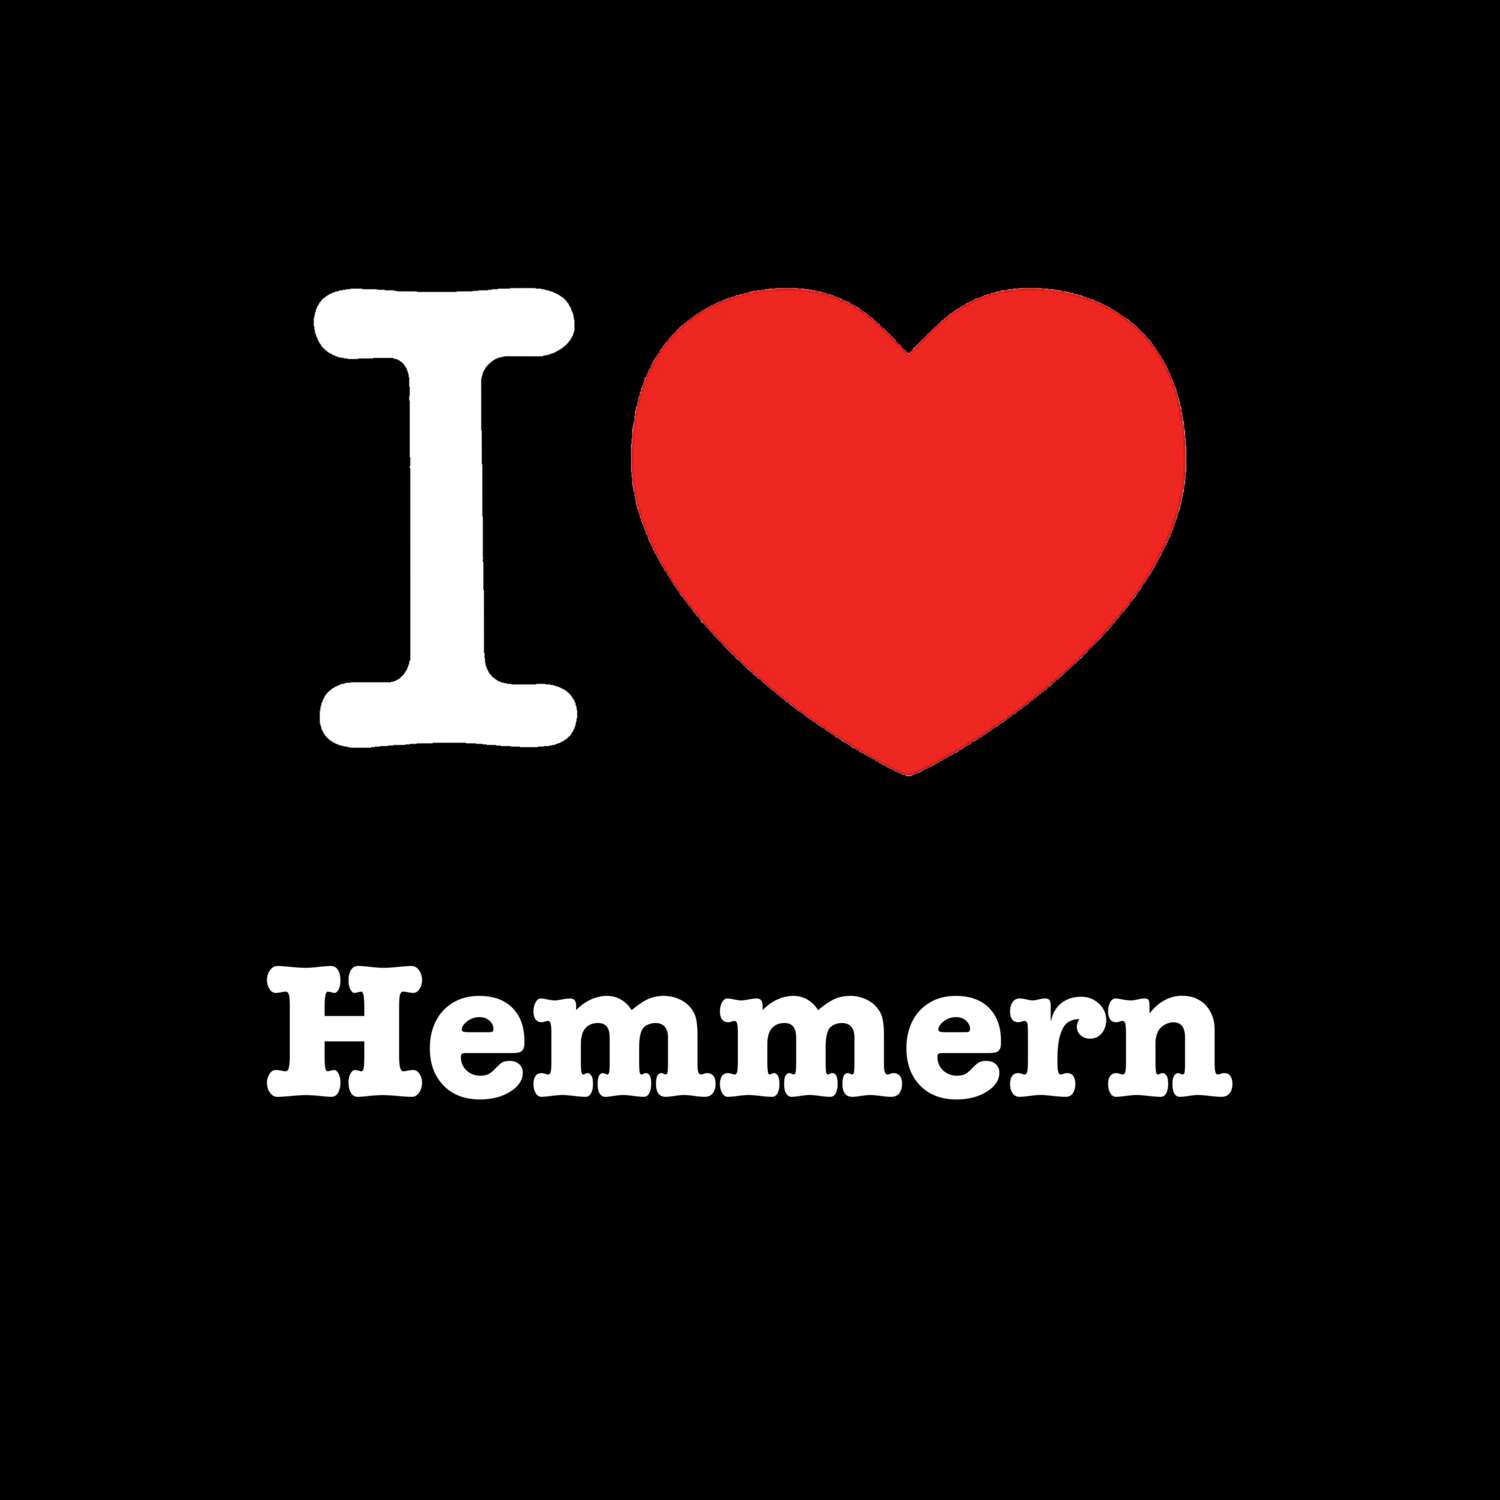 Hemmern T-Shirt »I love«